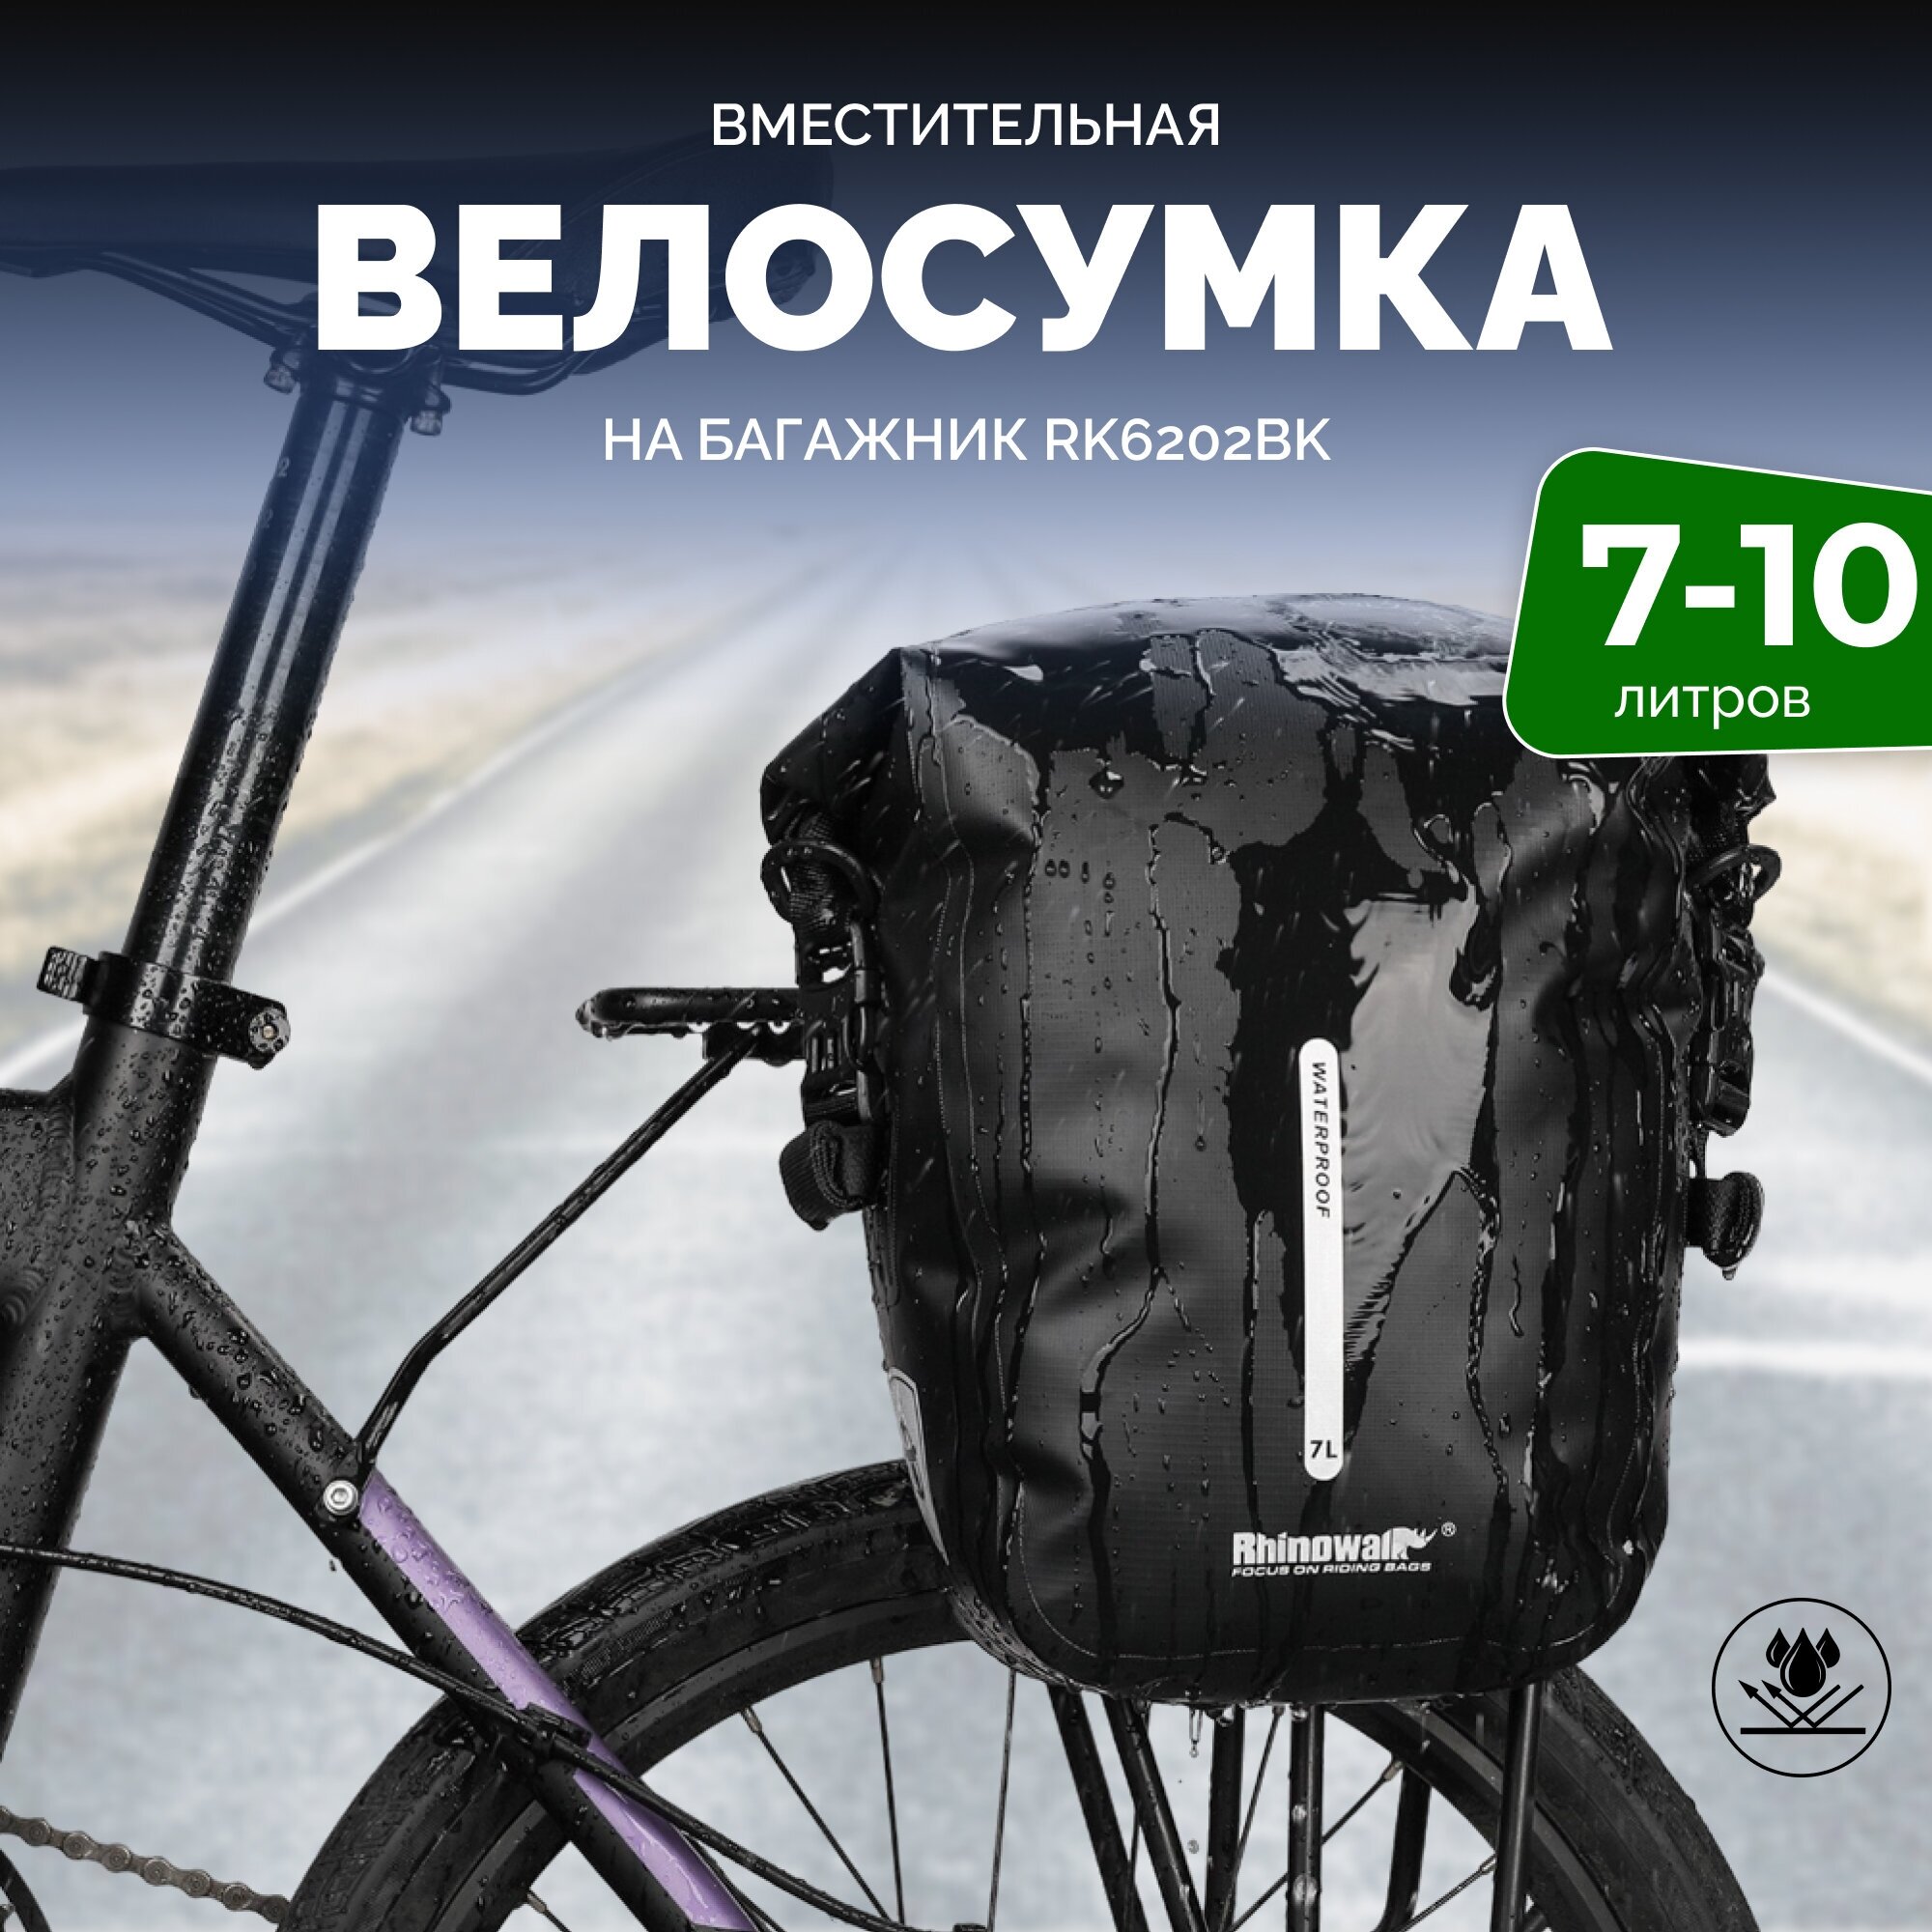 Сумка для велосипеда Rhinowalk RK6202BK 7-10 литров